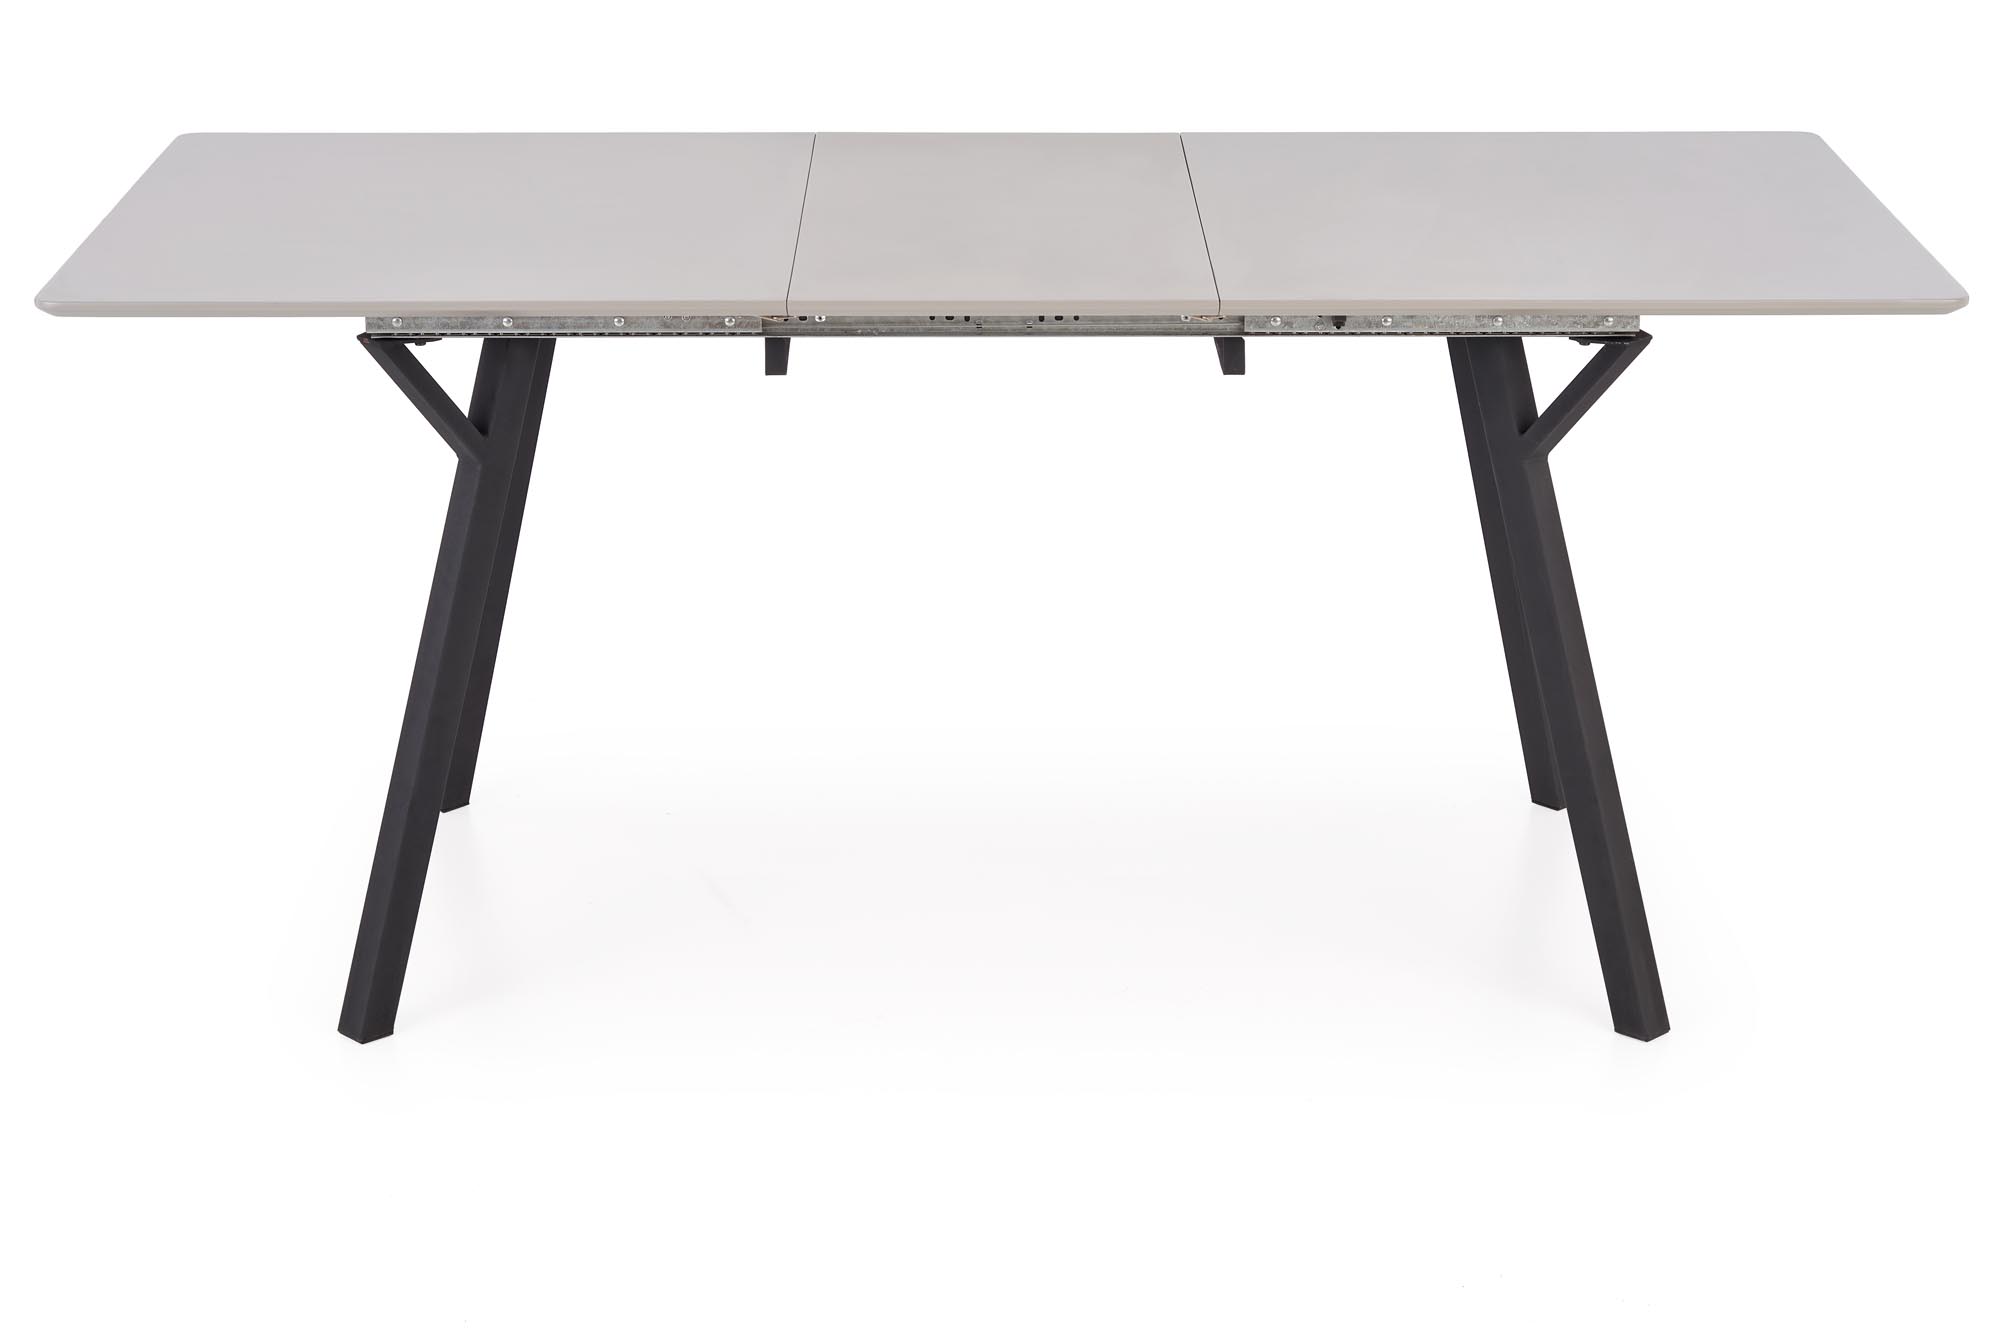 Stôl rozkladany Balrog 2 - svetlý popol / Čierny Stôl rozkladany balrog 2 - svetlý popol / Čierny